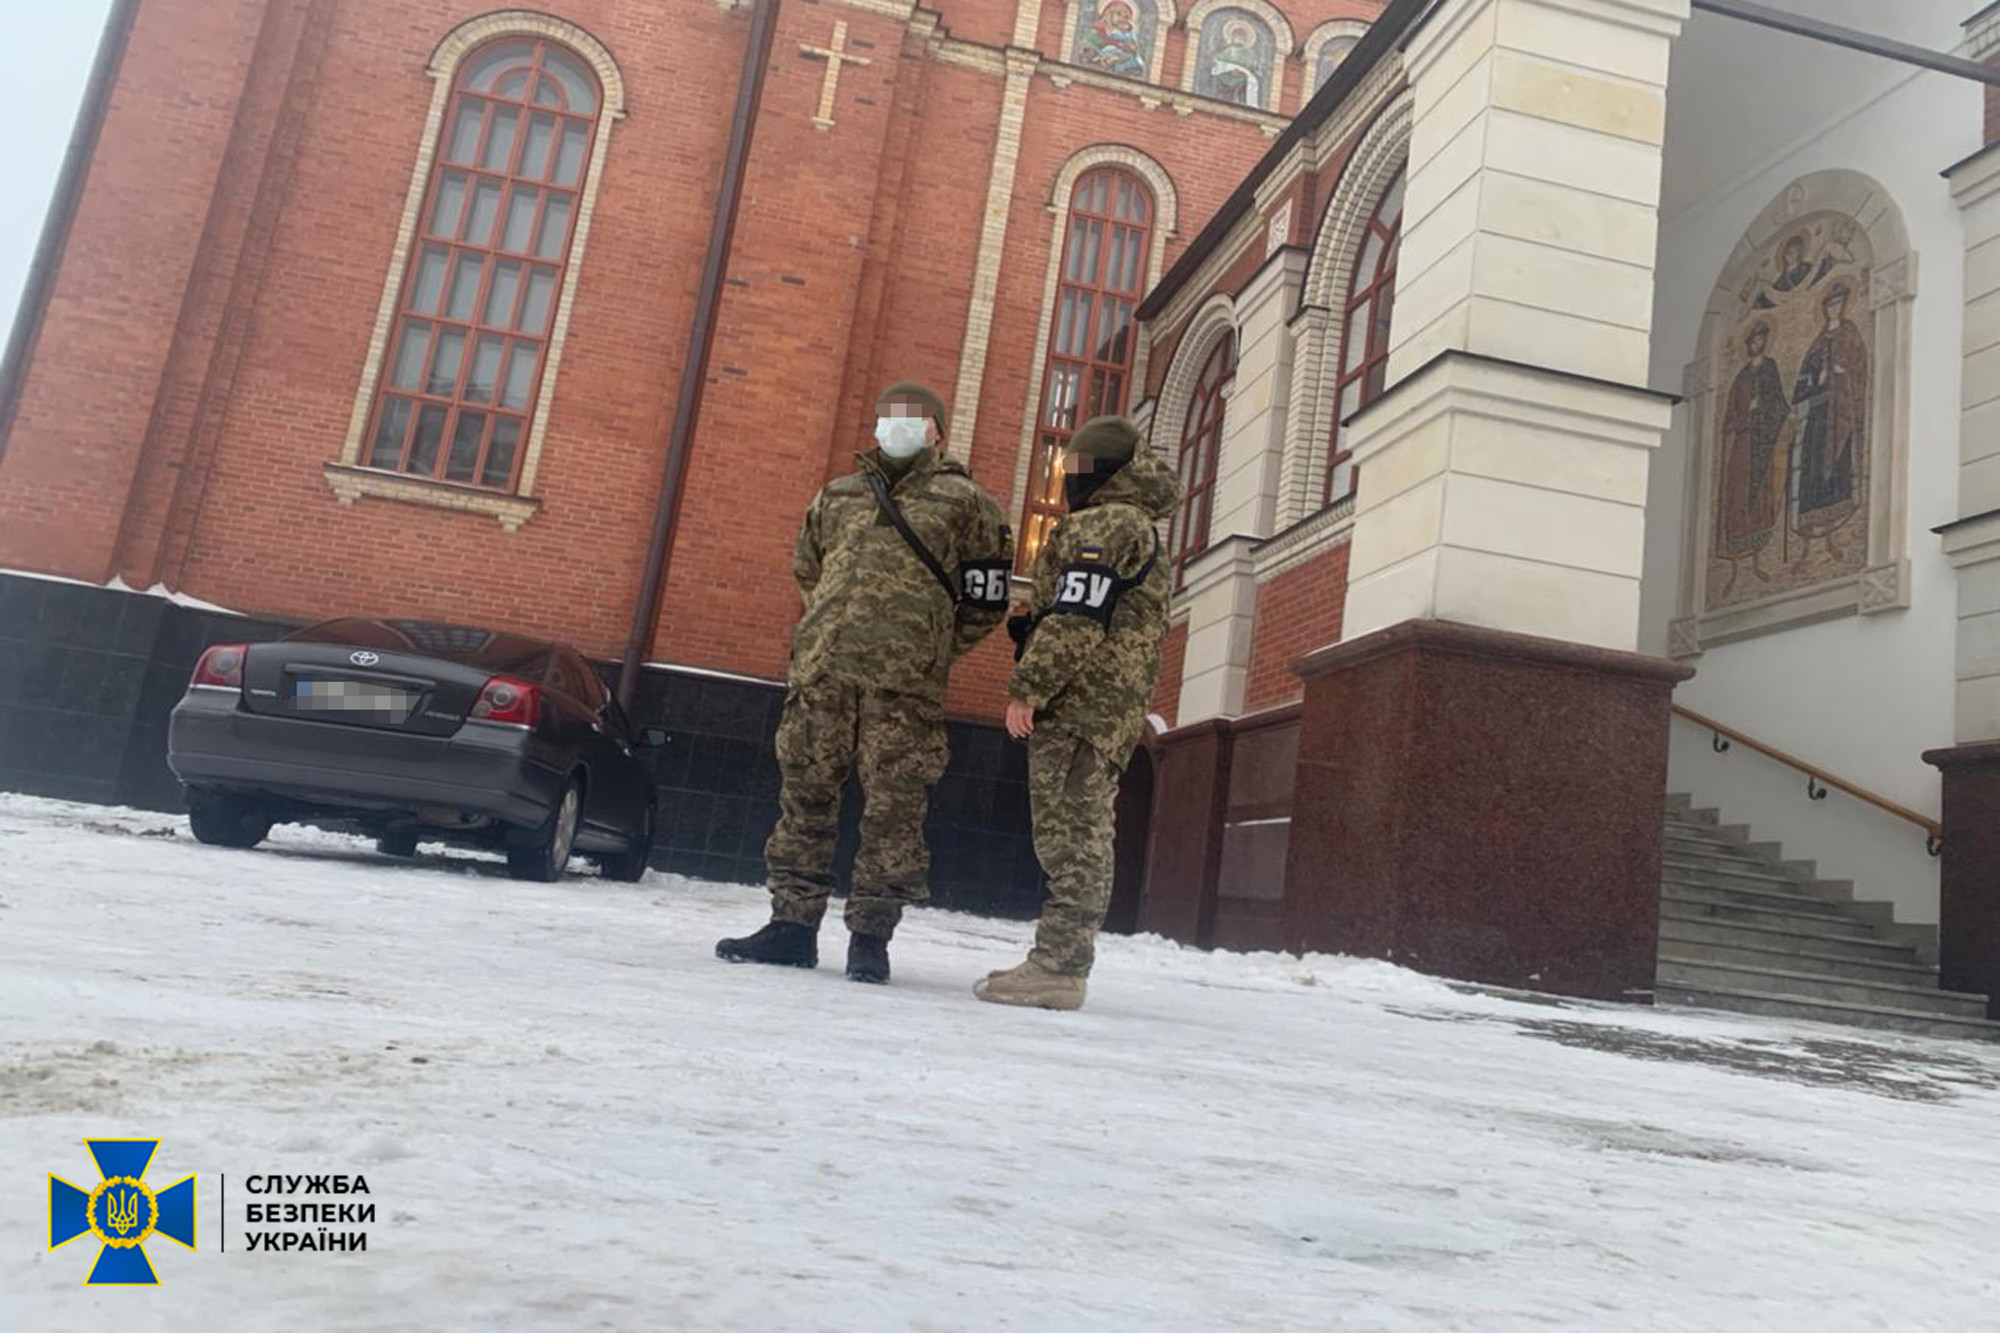 СБУ проводить обшуки в Свято-Покровському кафедральному соборі УПЦ (МП) у Борисполі - зображення